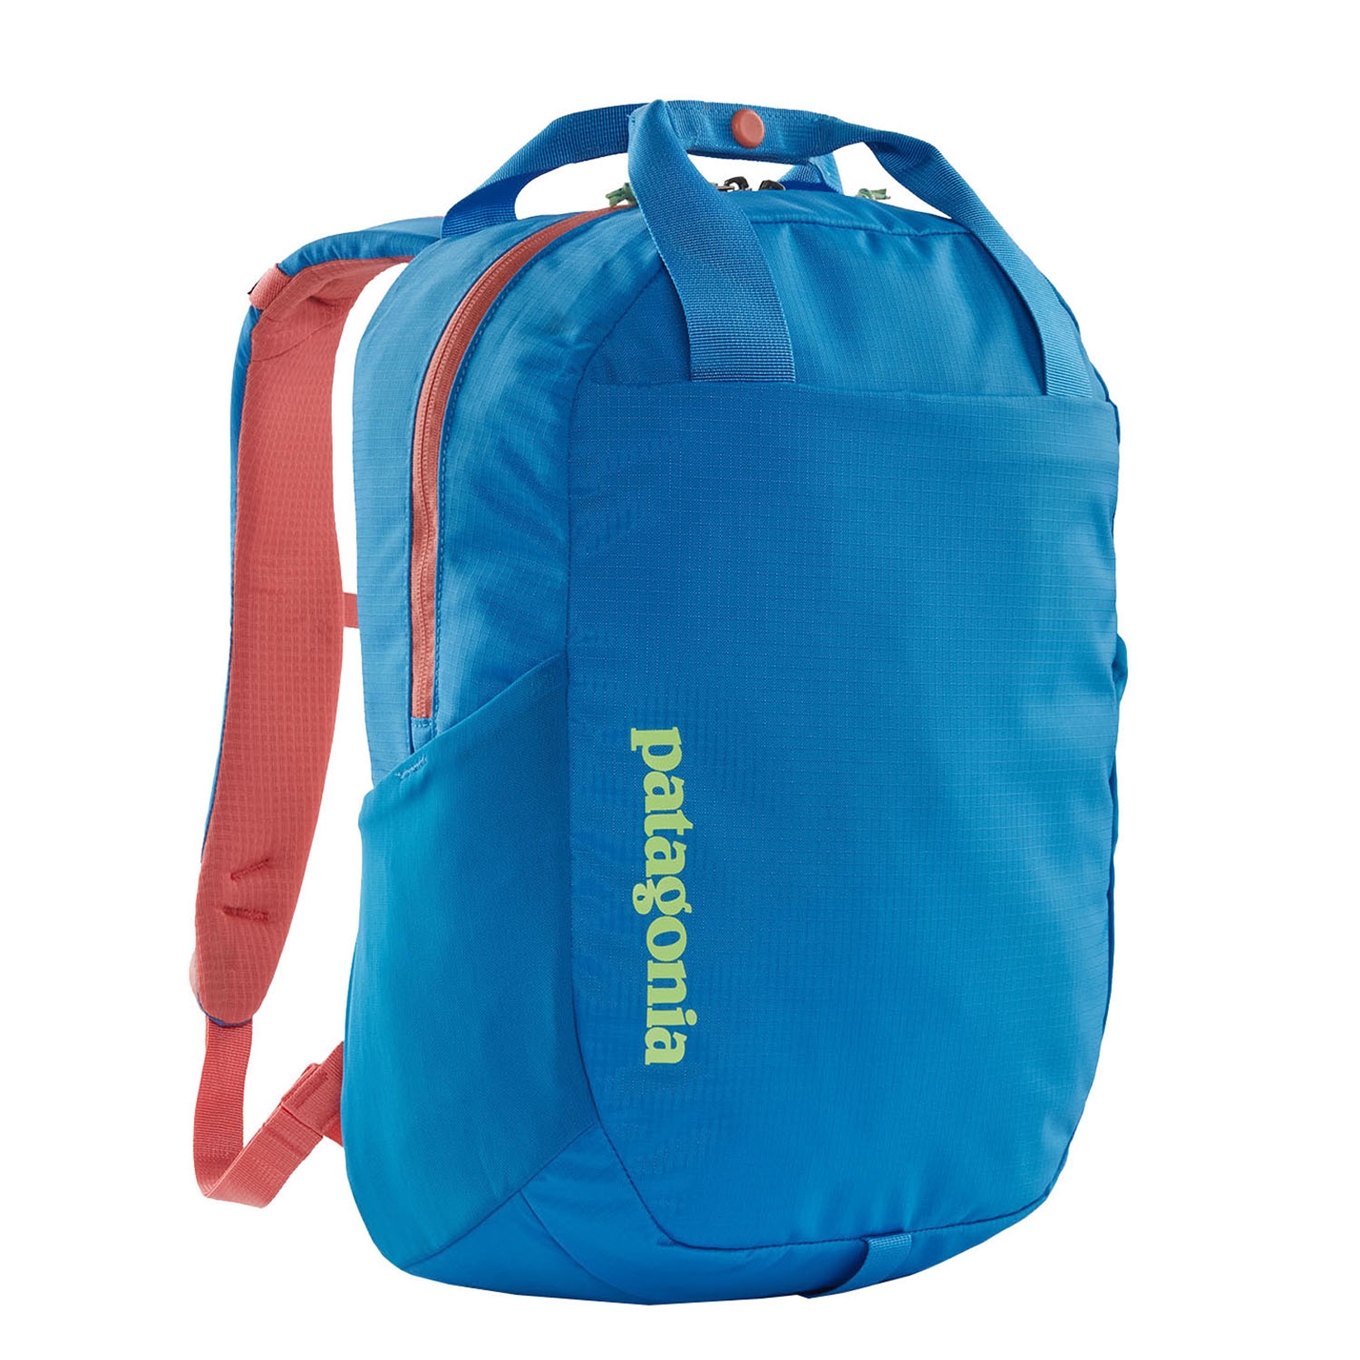 Patagonia Atom Tote Pack 20L vessel blue backpack